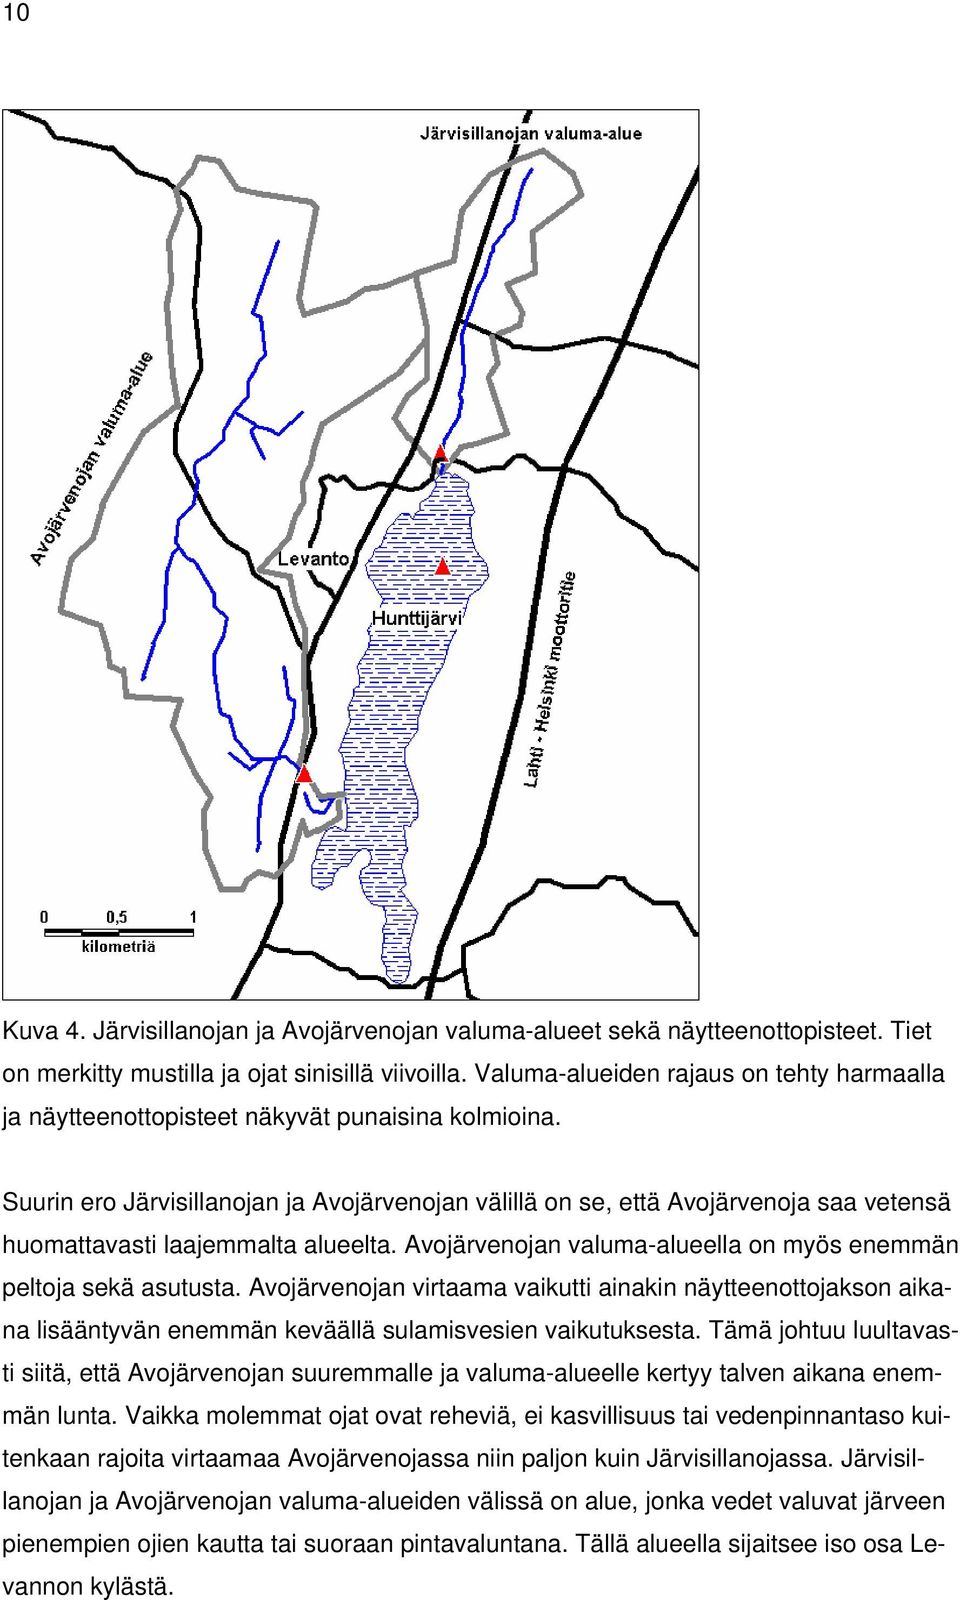 Suurin ero Järvisillanojan ja Avojärvenojan välillä on se, että Avojärvenoja saa vetensä huomattavasti laajemmalta alueelta. Avojärvenojan valuma-alueella on myös enemmän peltoja sekä asutusta.